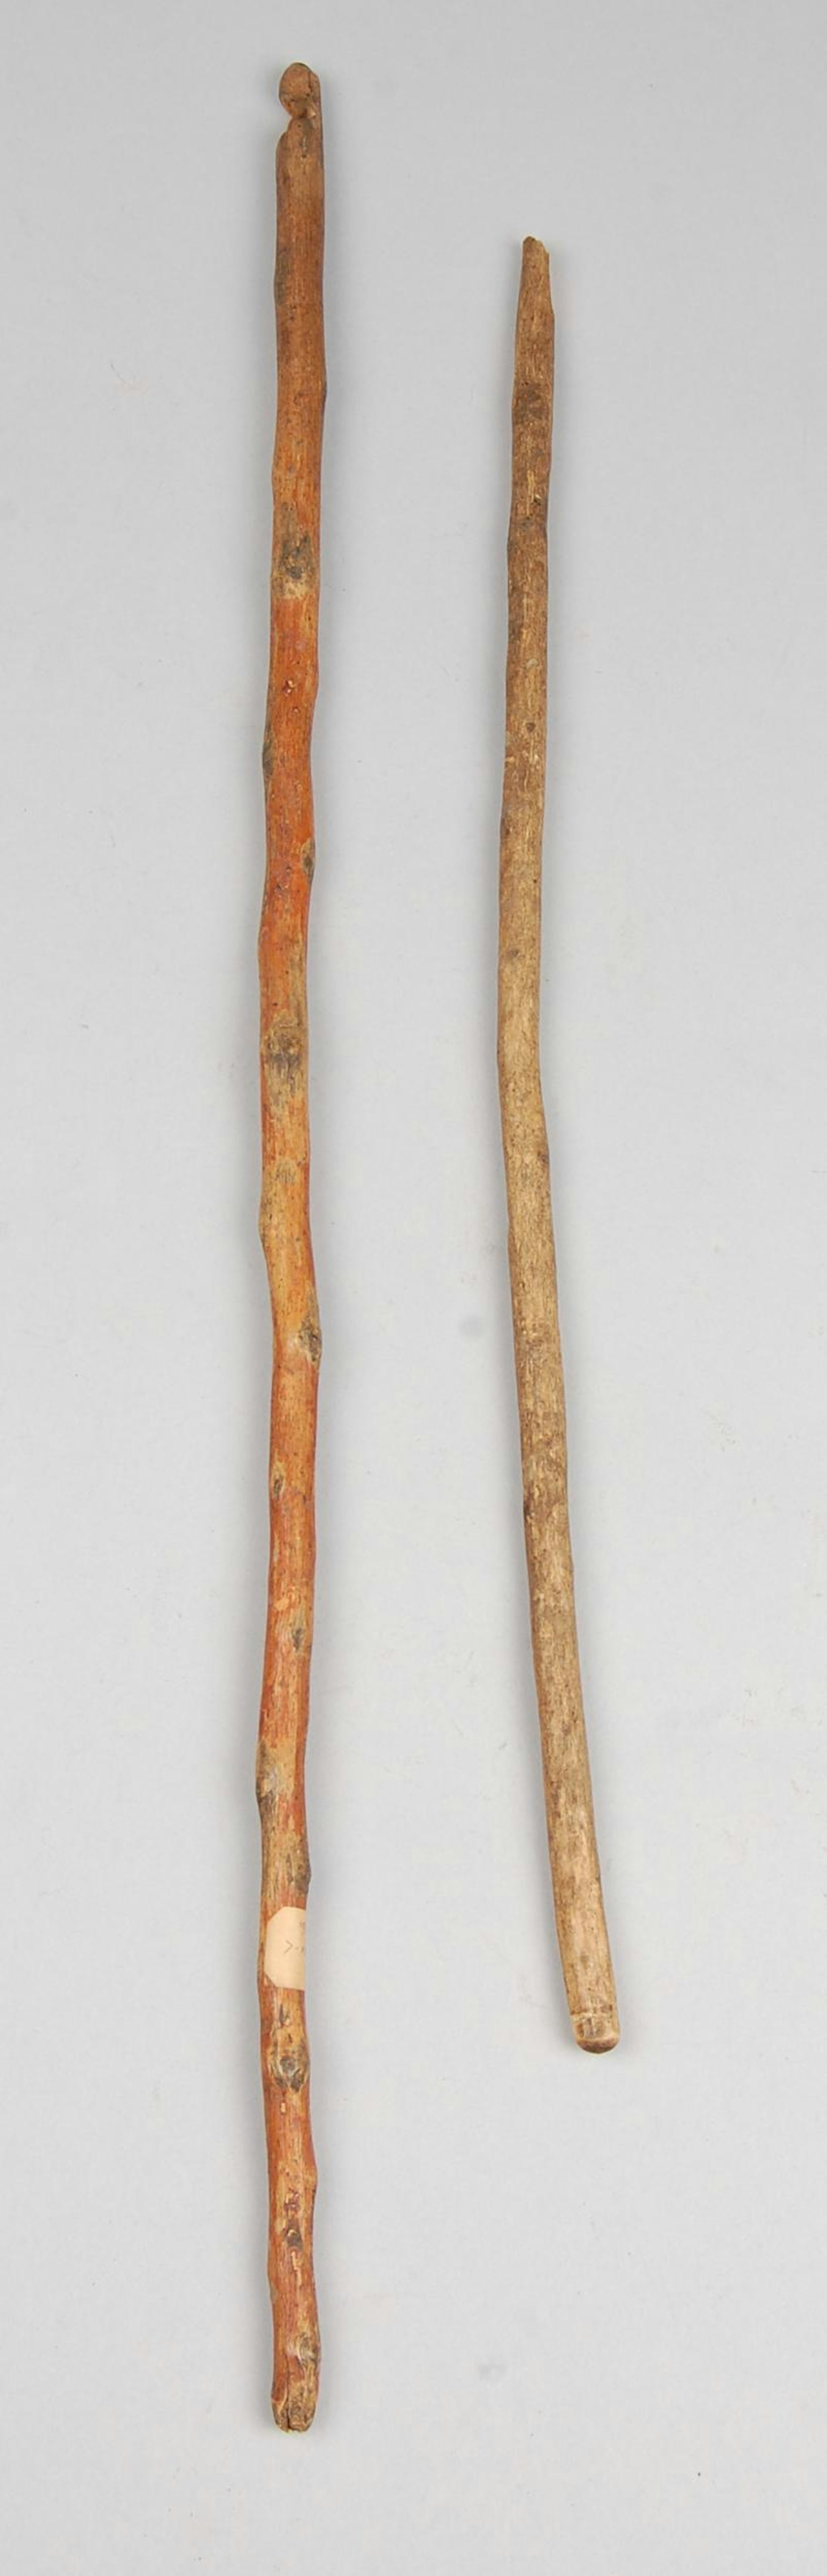 San fire-sticks by unknown artist, (c.1923).